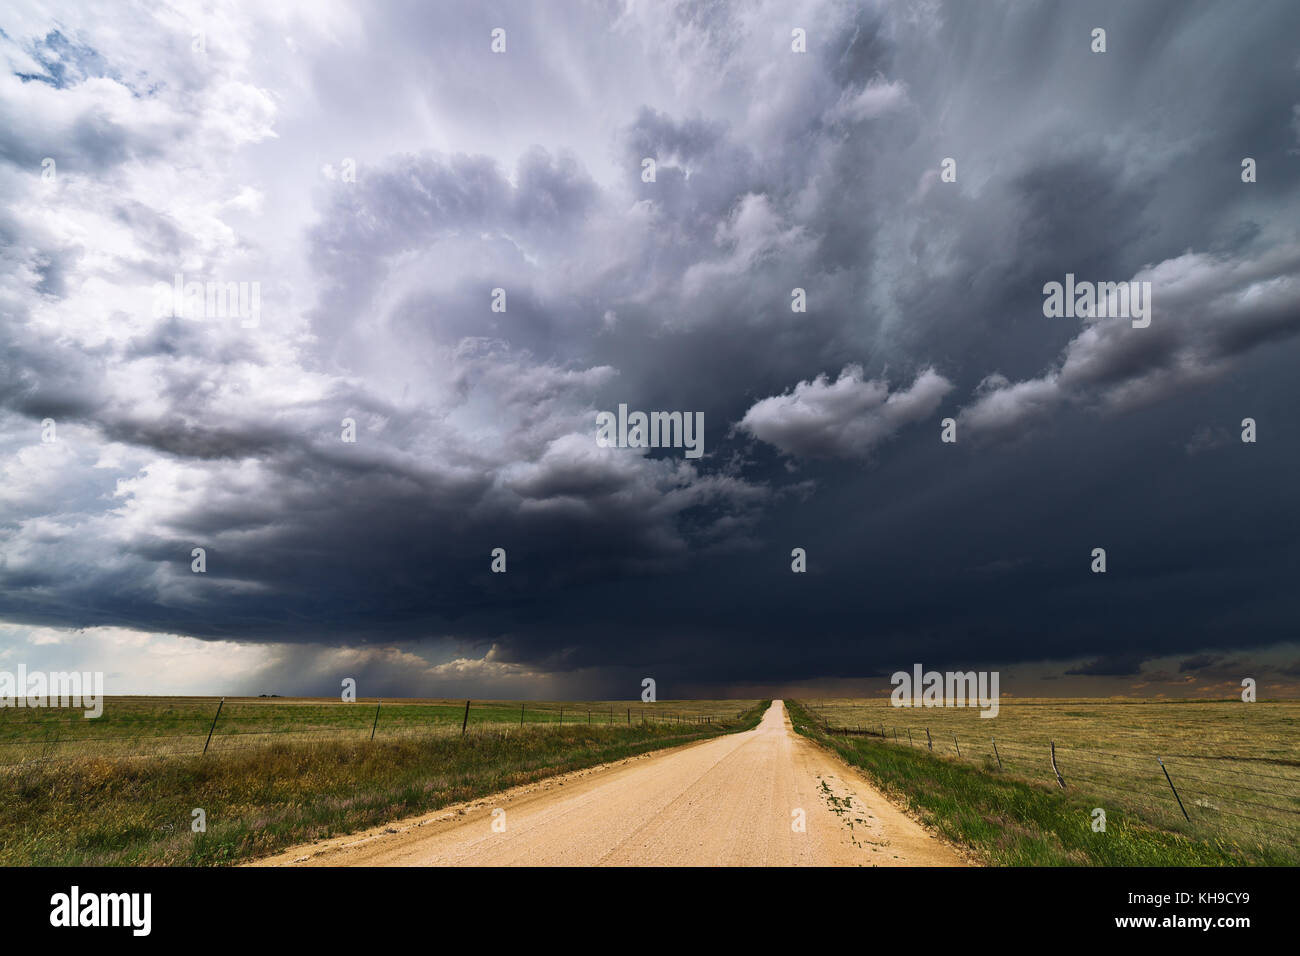 Dramatisch stürmischer Himmel mit bedrohlichen Wolken über einem Feld mit Feldweg zum Horizont Stockfoto